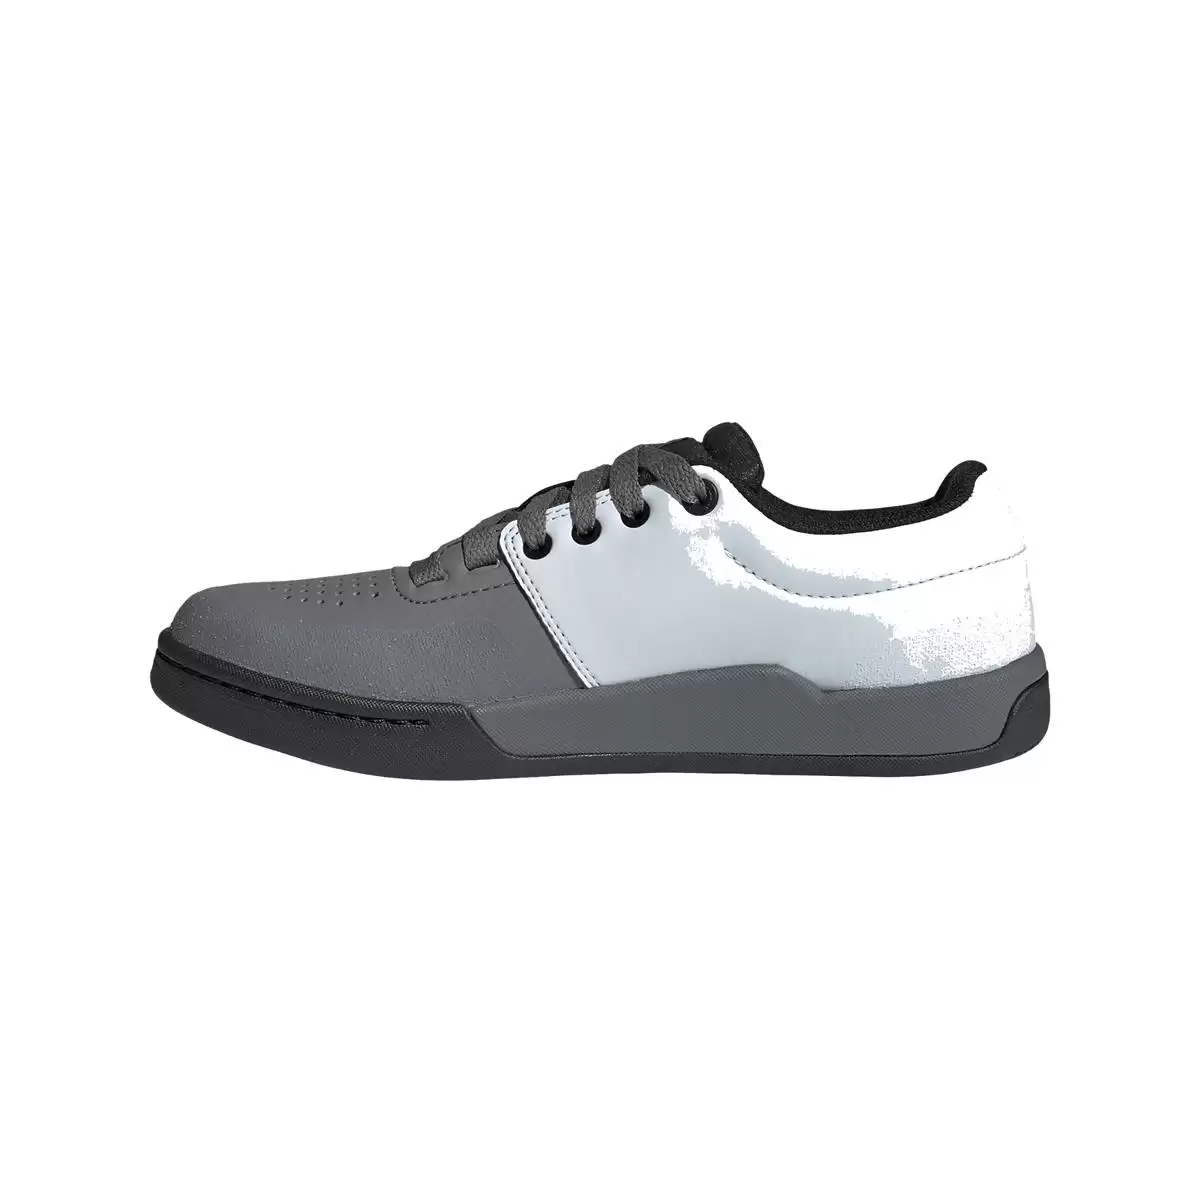 MTB Flat Shoes Freerider Pro White/Grey Size 38.5 #3